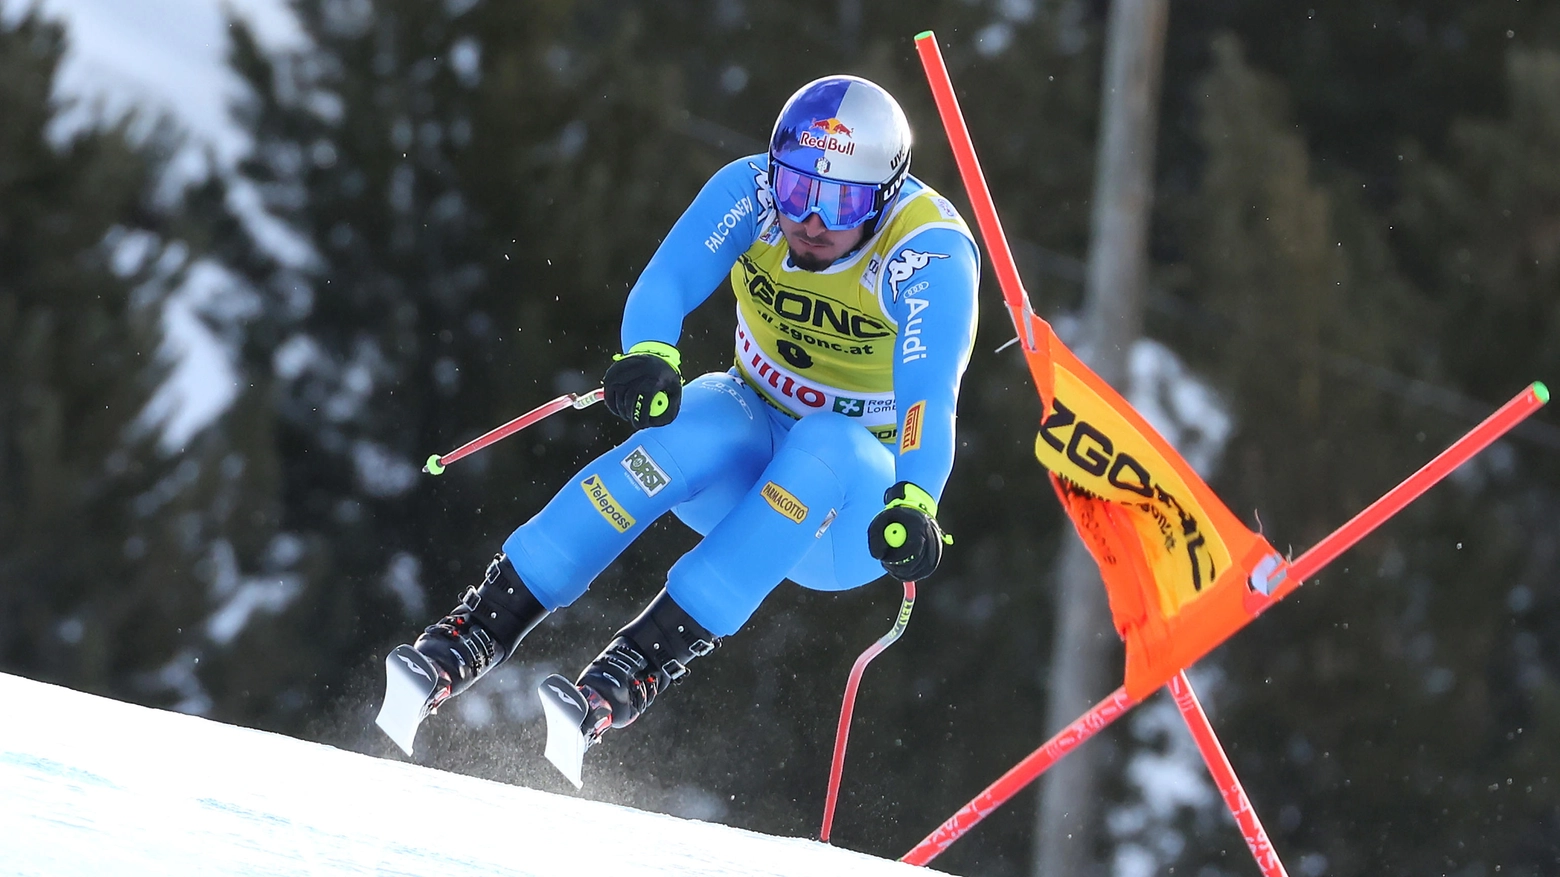 Coppa del mondo di sci a Bormio: discesa e supergigante, orari e favoriti